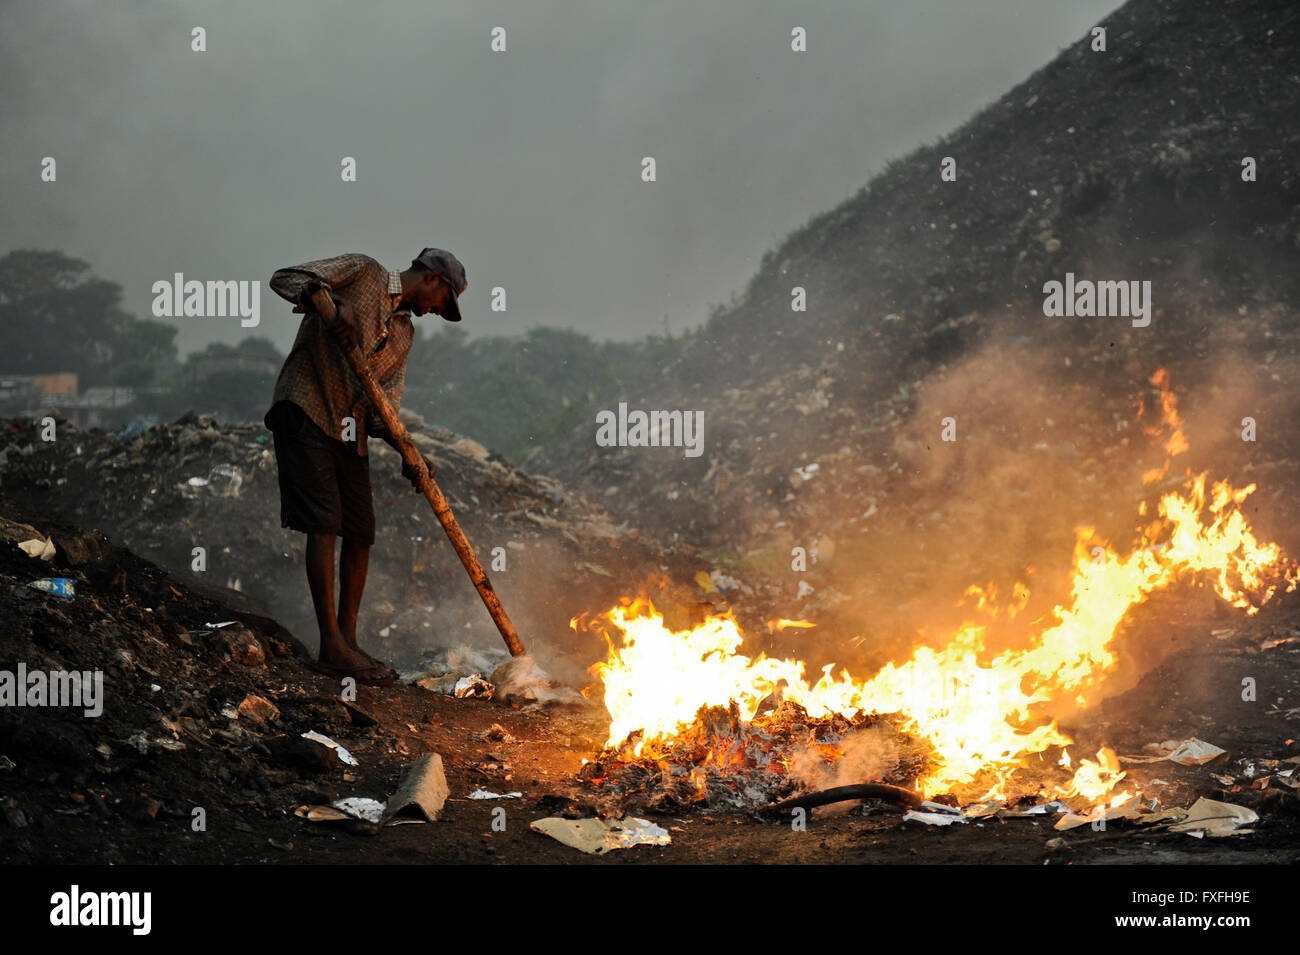 Sri Lanka Colombo, la montagne de déchets à Bloemendhal Road, la combustion des déchets et des ramasseurs de rag Banque D'Images